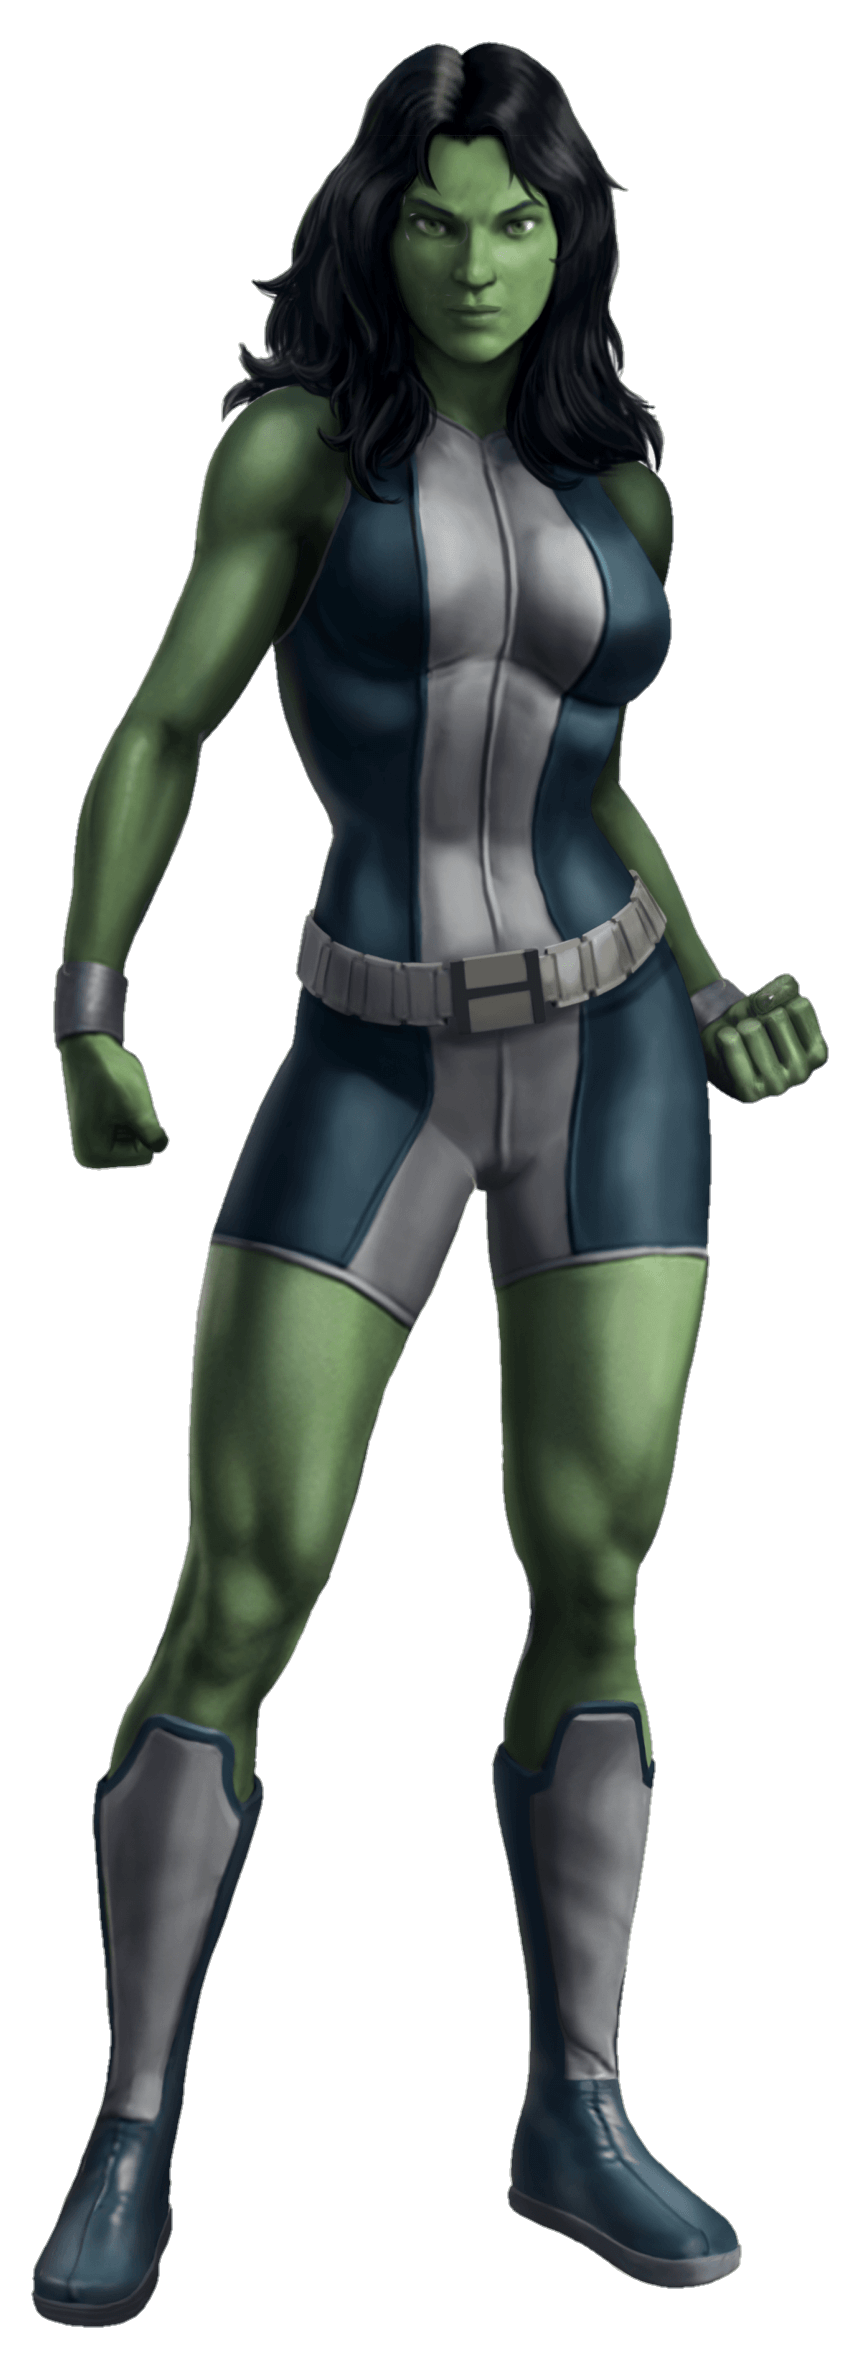 she-hulk-pngfre-14